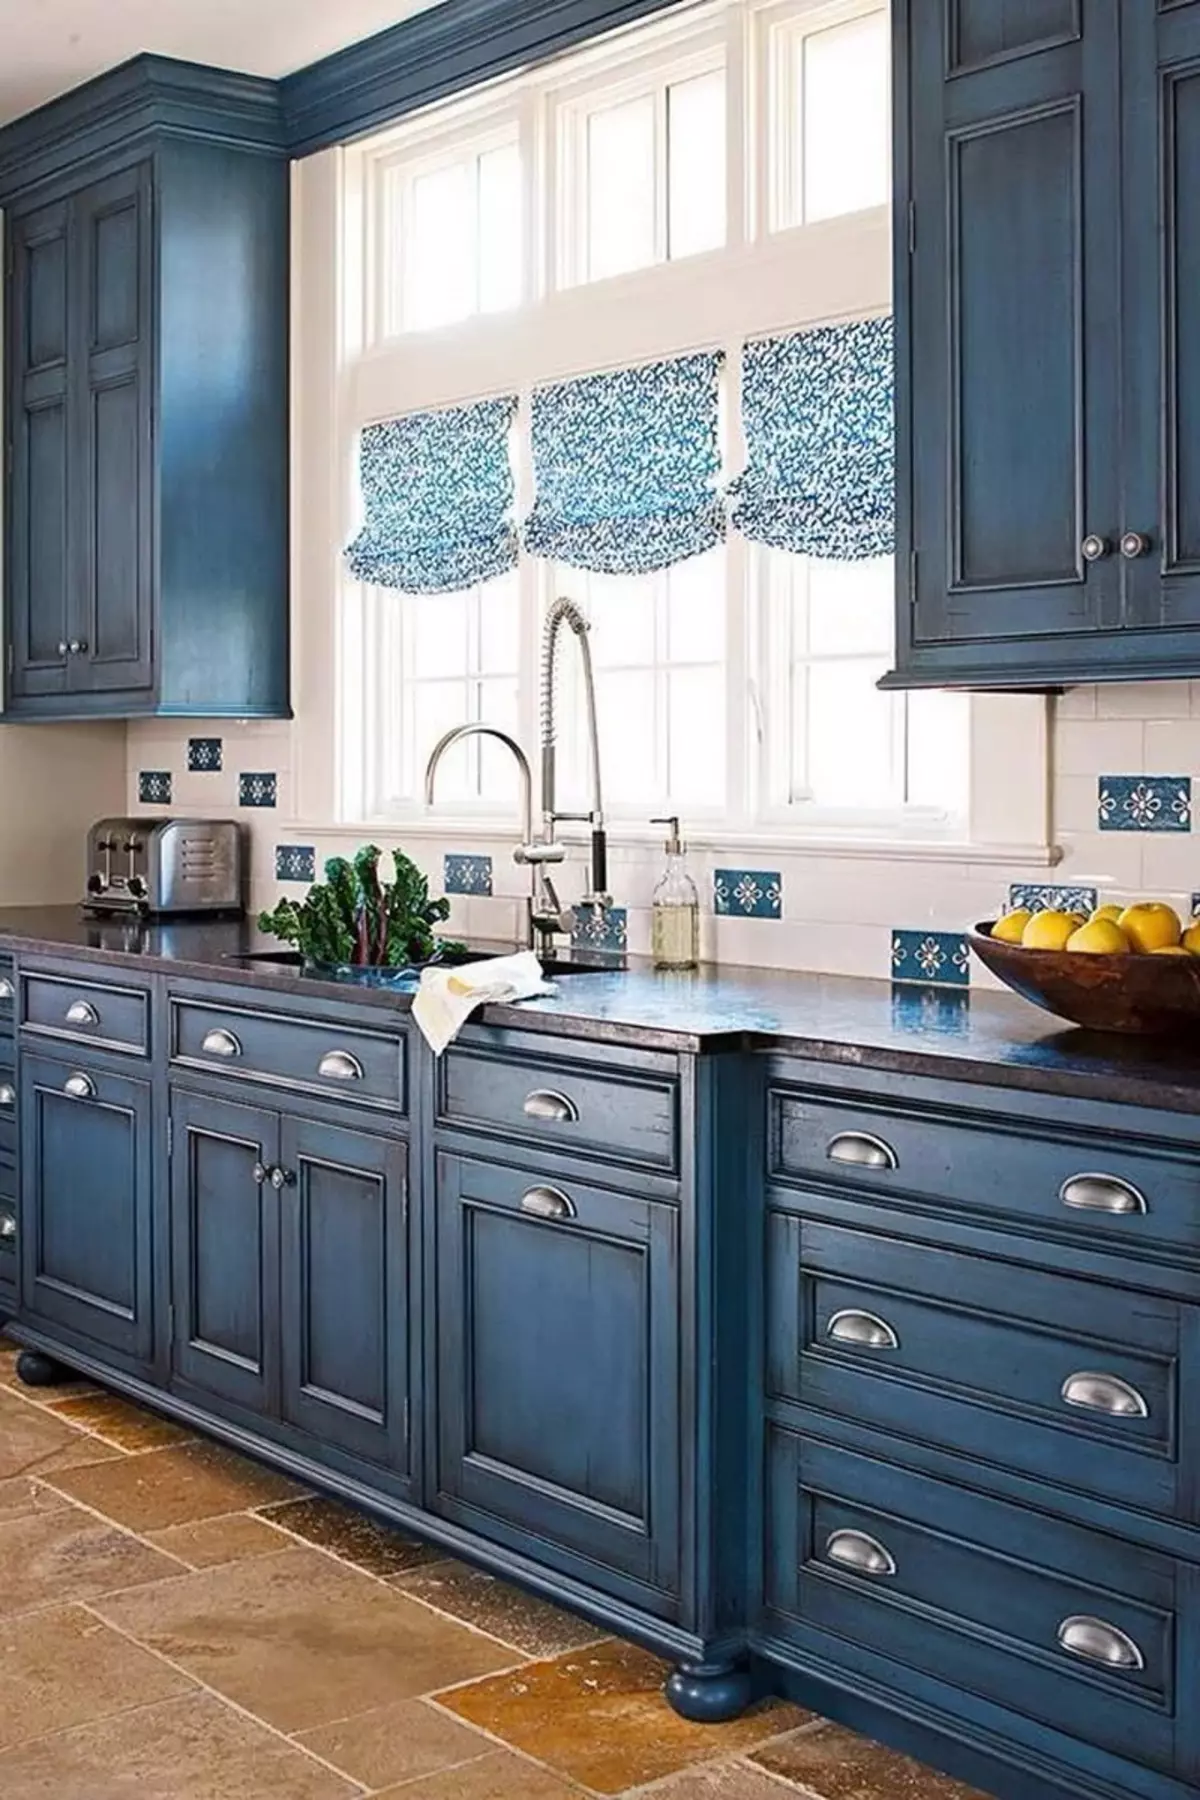 Bucătărie albastră (82 fotografii): Ce culori sunt combinate în interiorul unui set de bucătărie albastră? Design de bucătărie în tonuri albastre ușoare și întunecate 9555_53